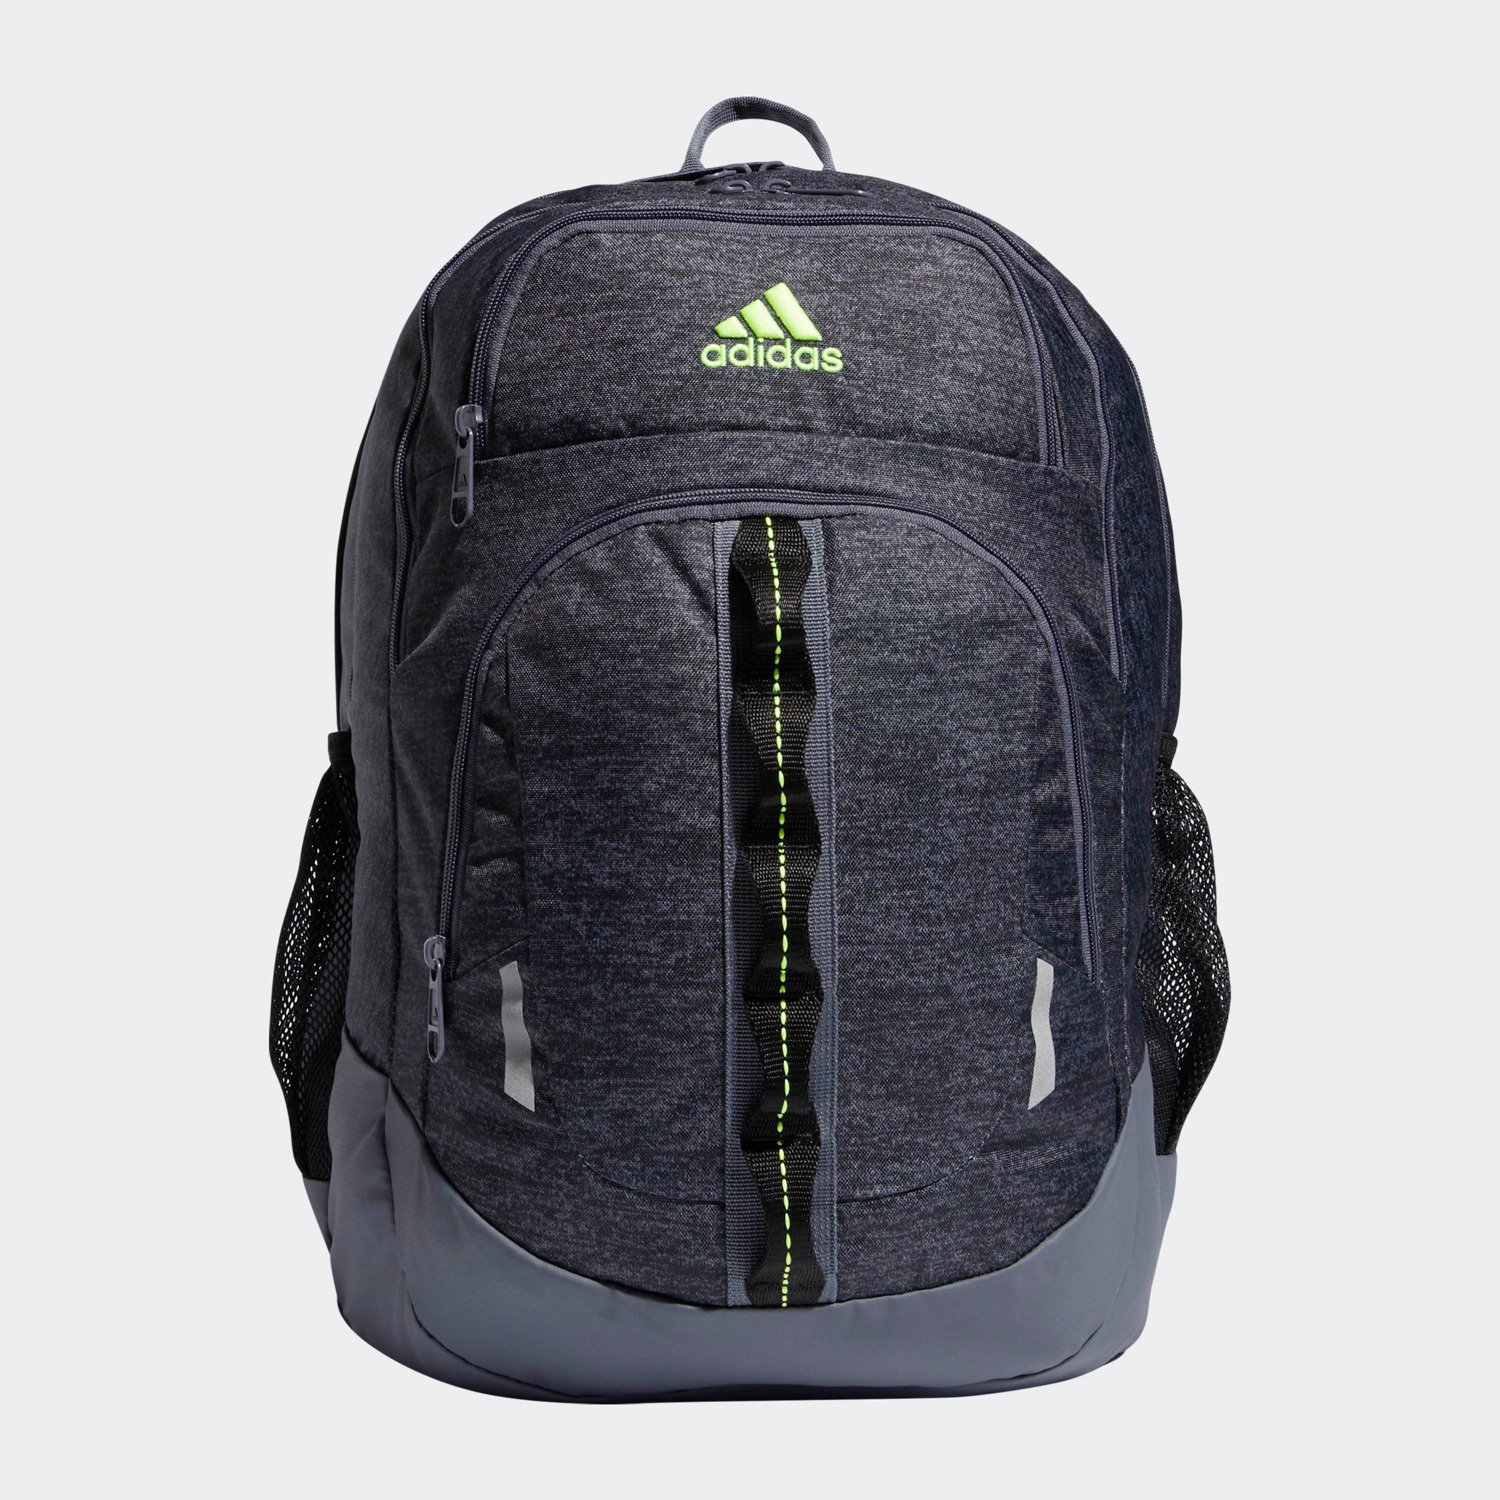 Adidasadidas Prime II Backpack Charcoal 